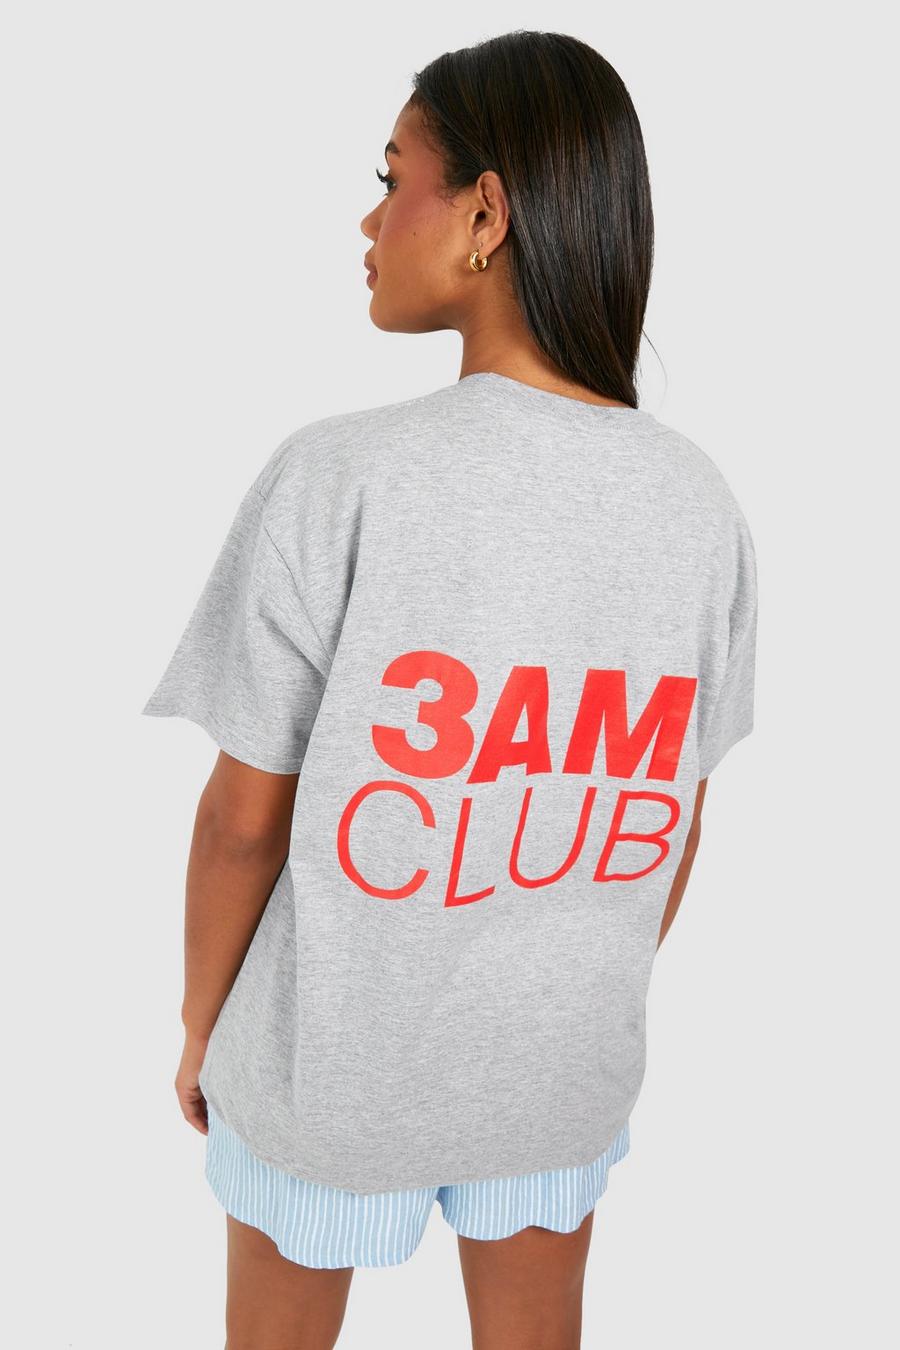 Camiseta oversize de algodón con estampado 3am Club, Grey